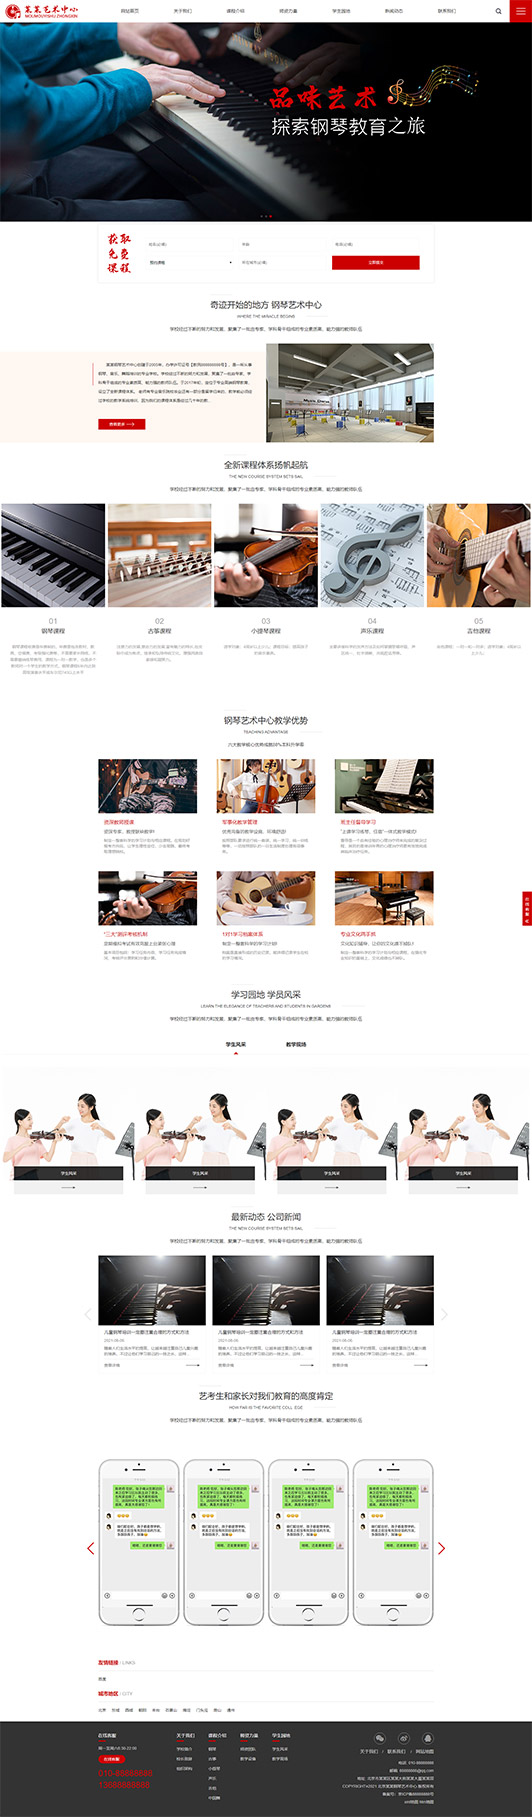 北屯钢琴艺术培训公司响应式企业网站